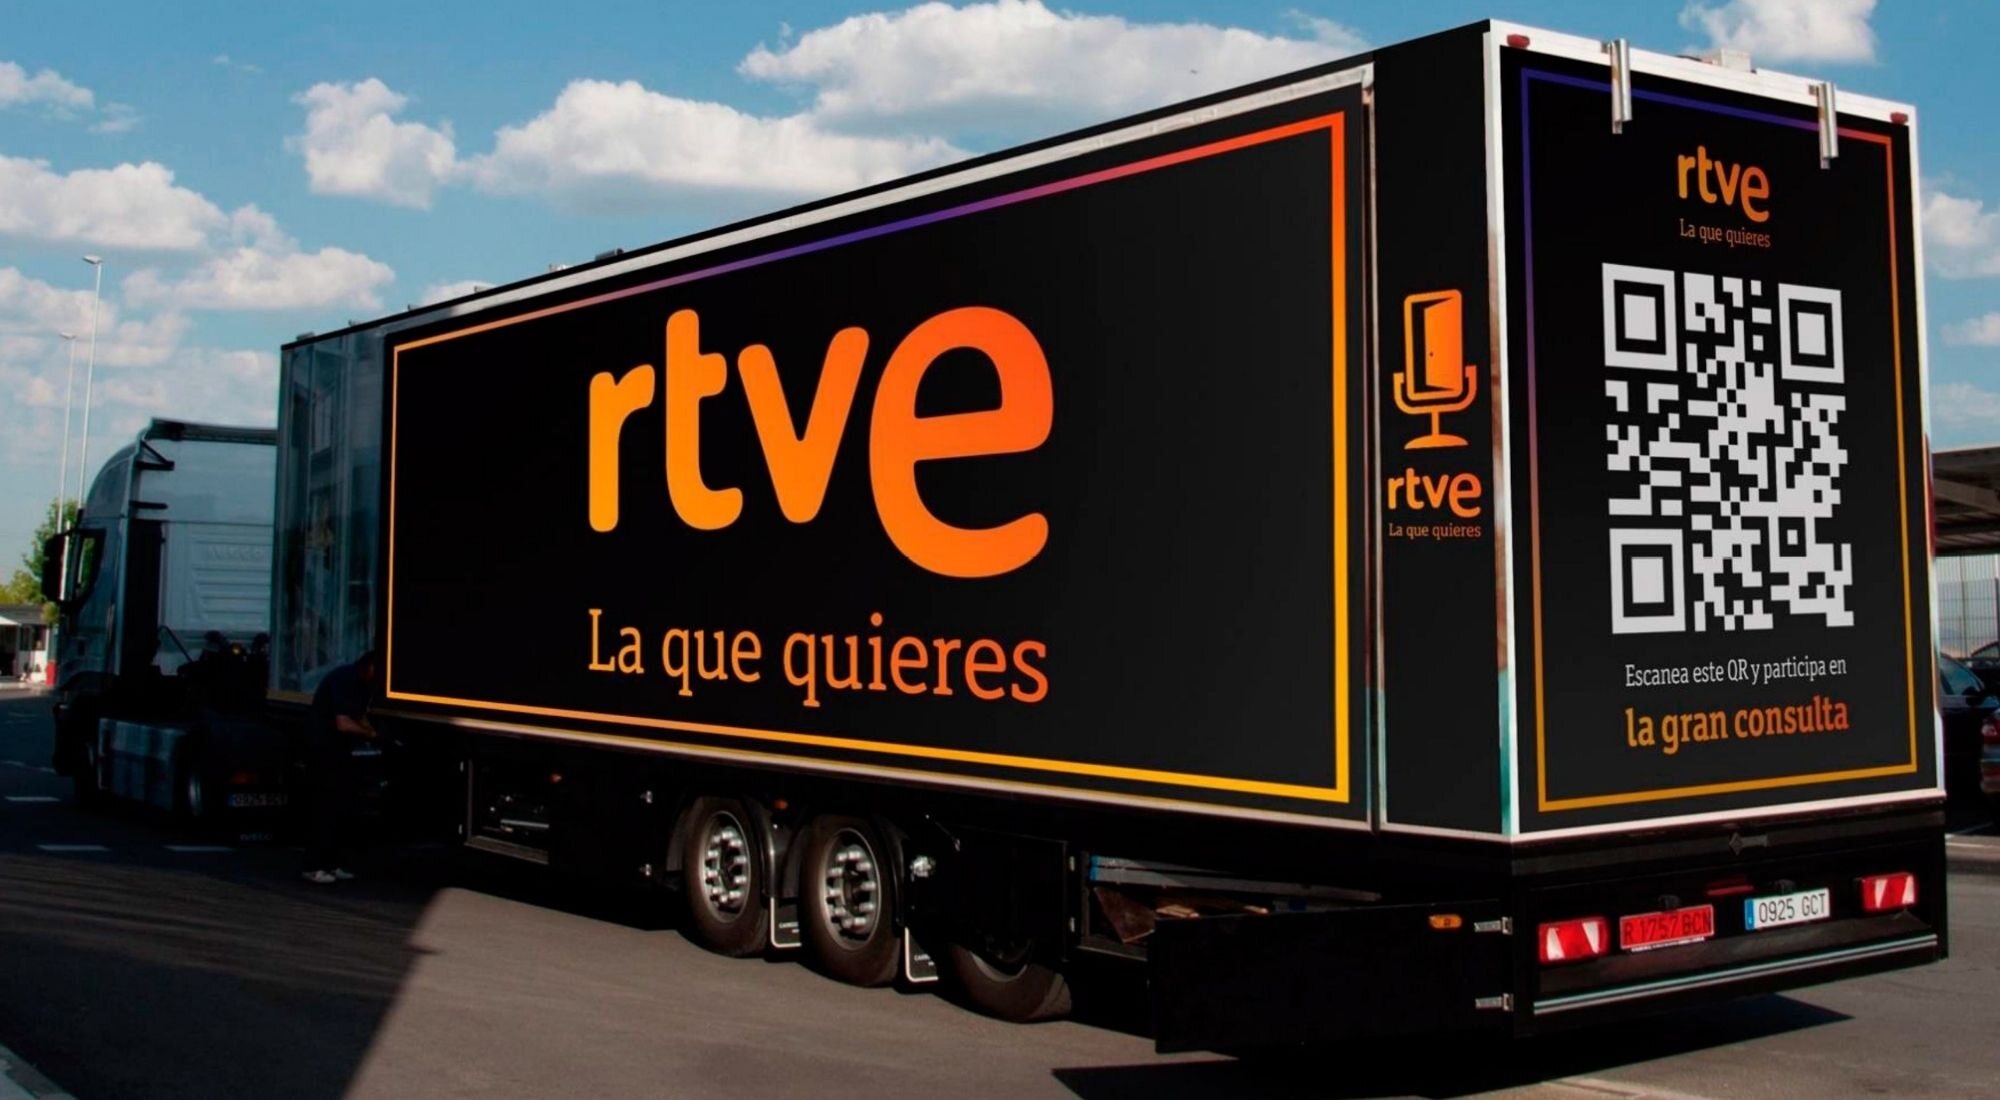 El plató móvil que recorre España en "la gran consulta" de RTVE